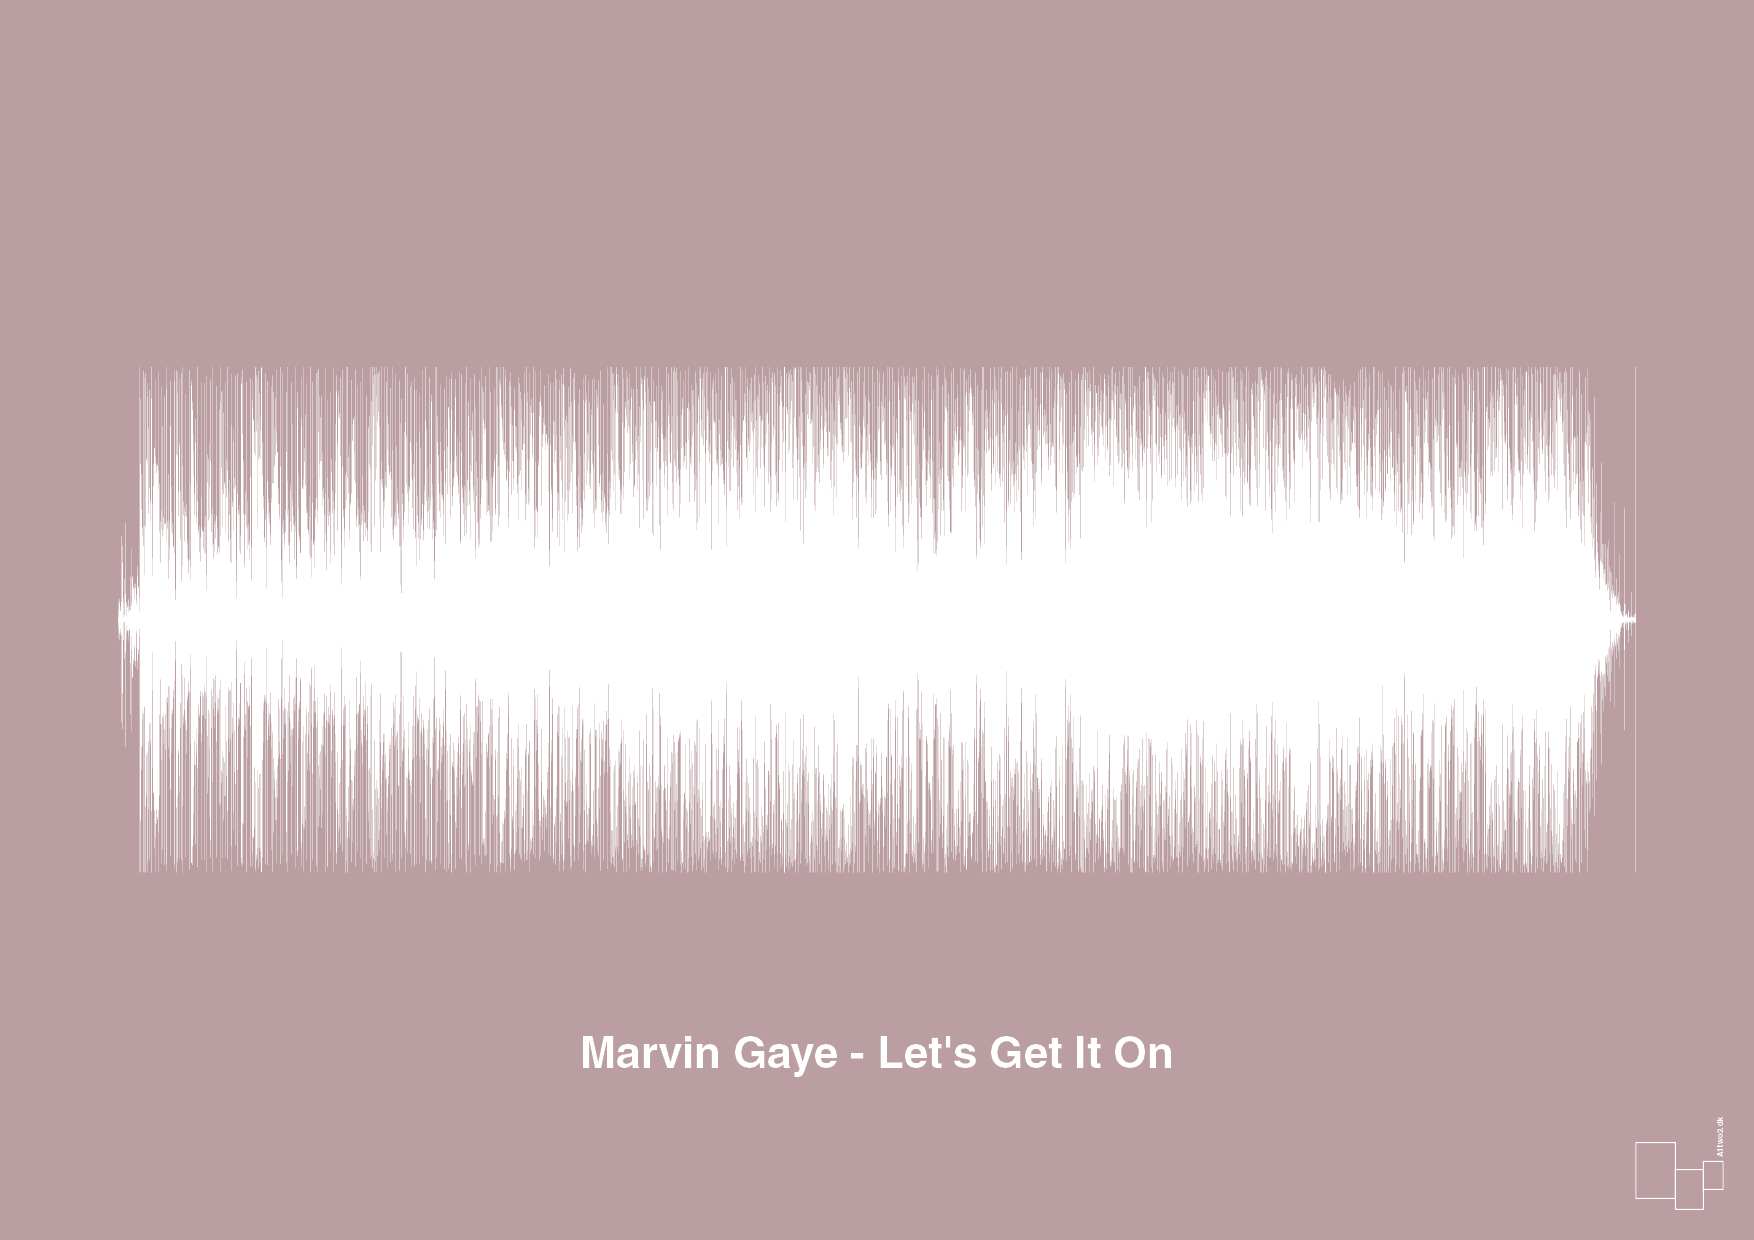 marvin gaye - let's get it on - Plakat med Musik i Light Rose